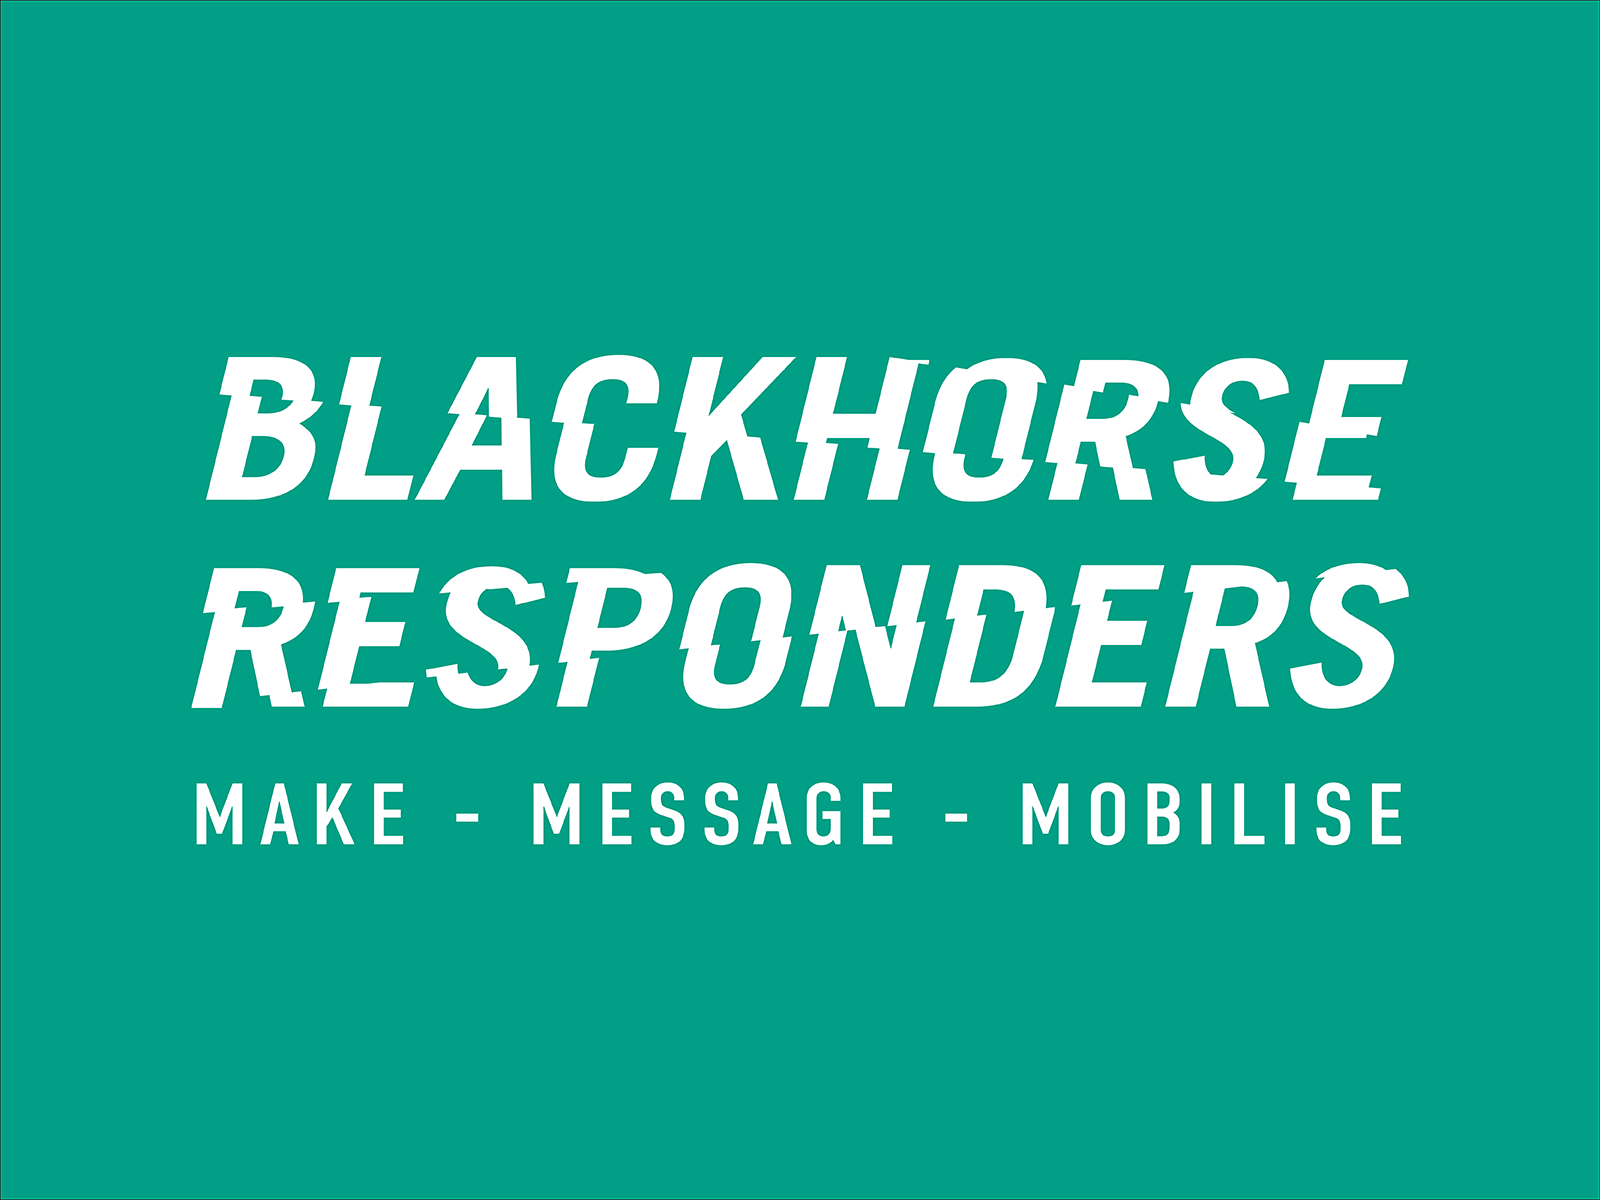 Blackhorse Responders Logo Type concepts